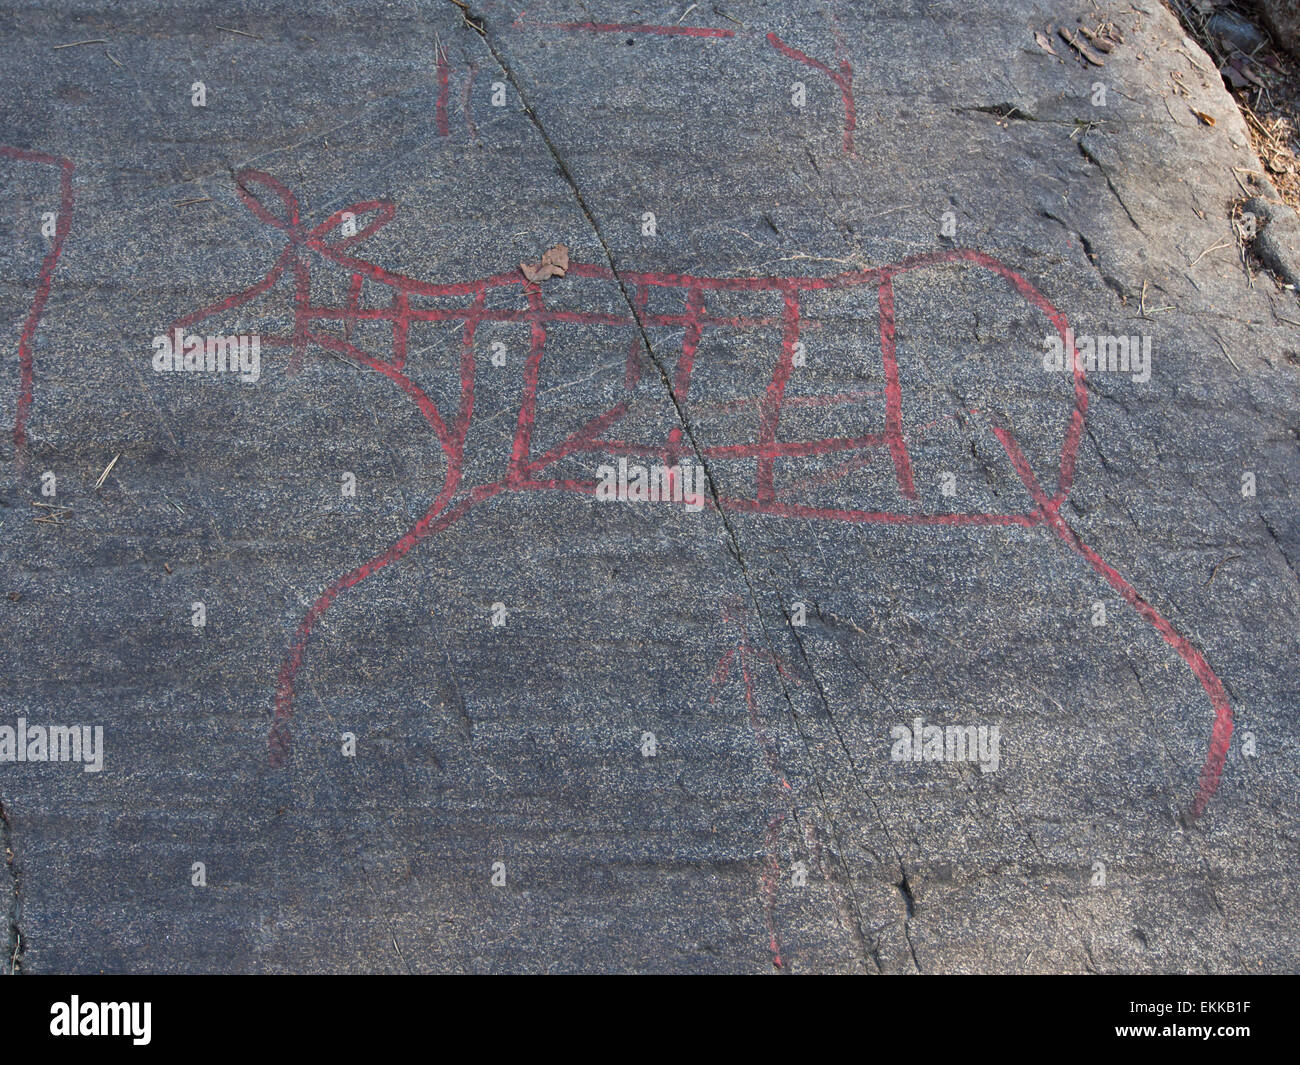 Norwegische Felszeichnungen oder Felsgravuren, angereichert mit roter Farbe, wahrscheinlich Elch, Oslo Norwegen Stockfoto